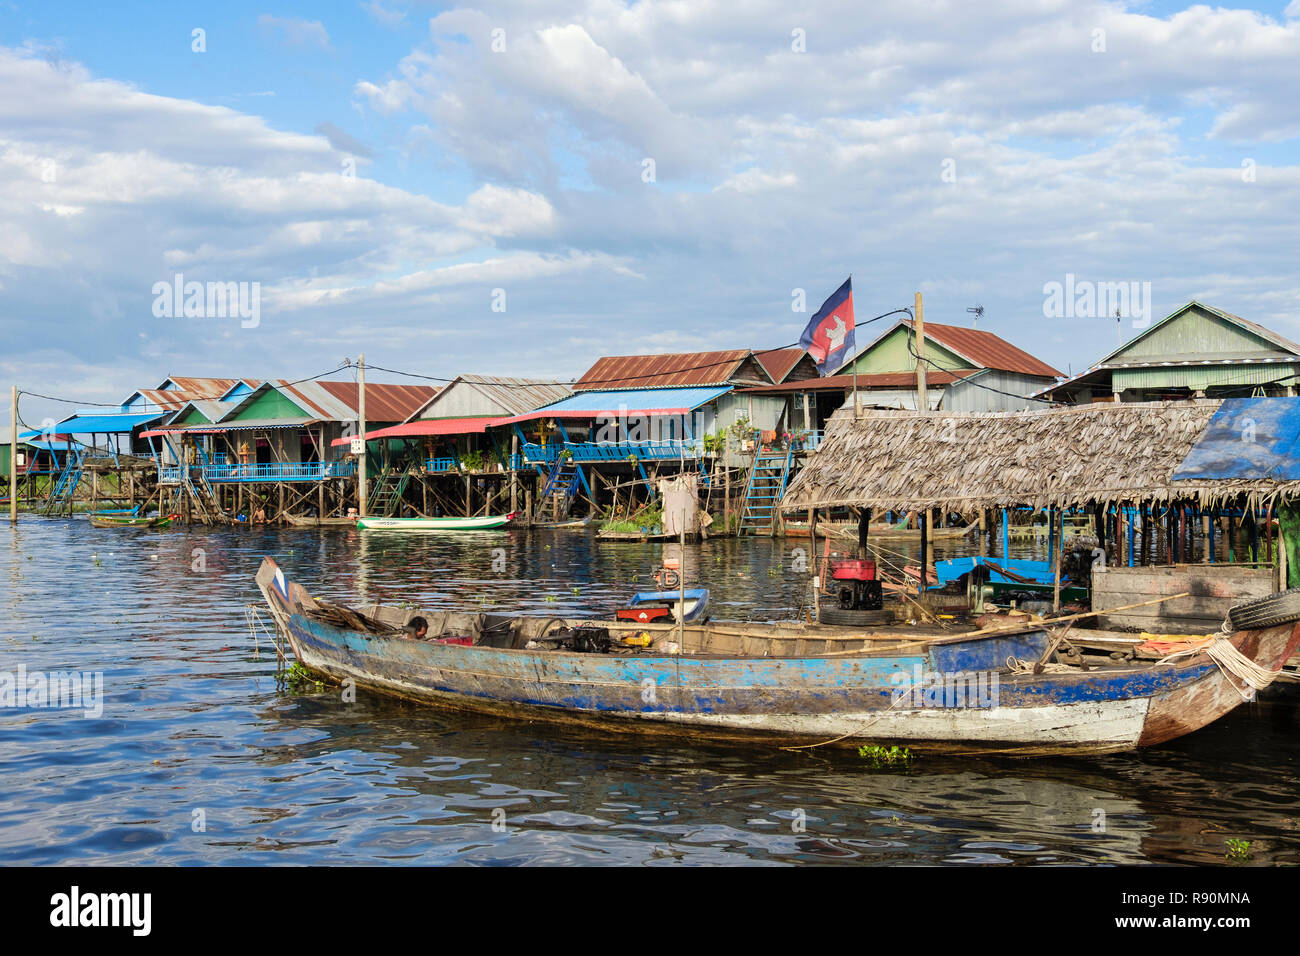 Vieux bateau en bois et maisons traditionnelles sur pilotis au village de pêcheurs flottant dans le lac Tonle Sap. Kampong Phluk, province de Siem Reap, Cambodge, Asie Banque D'Images